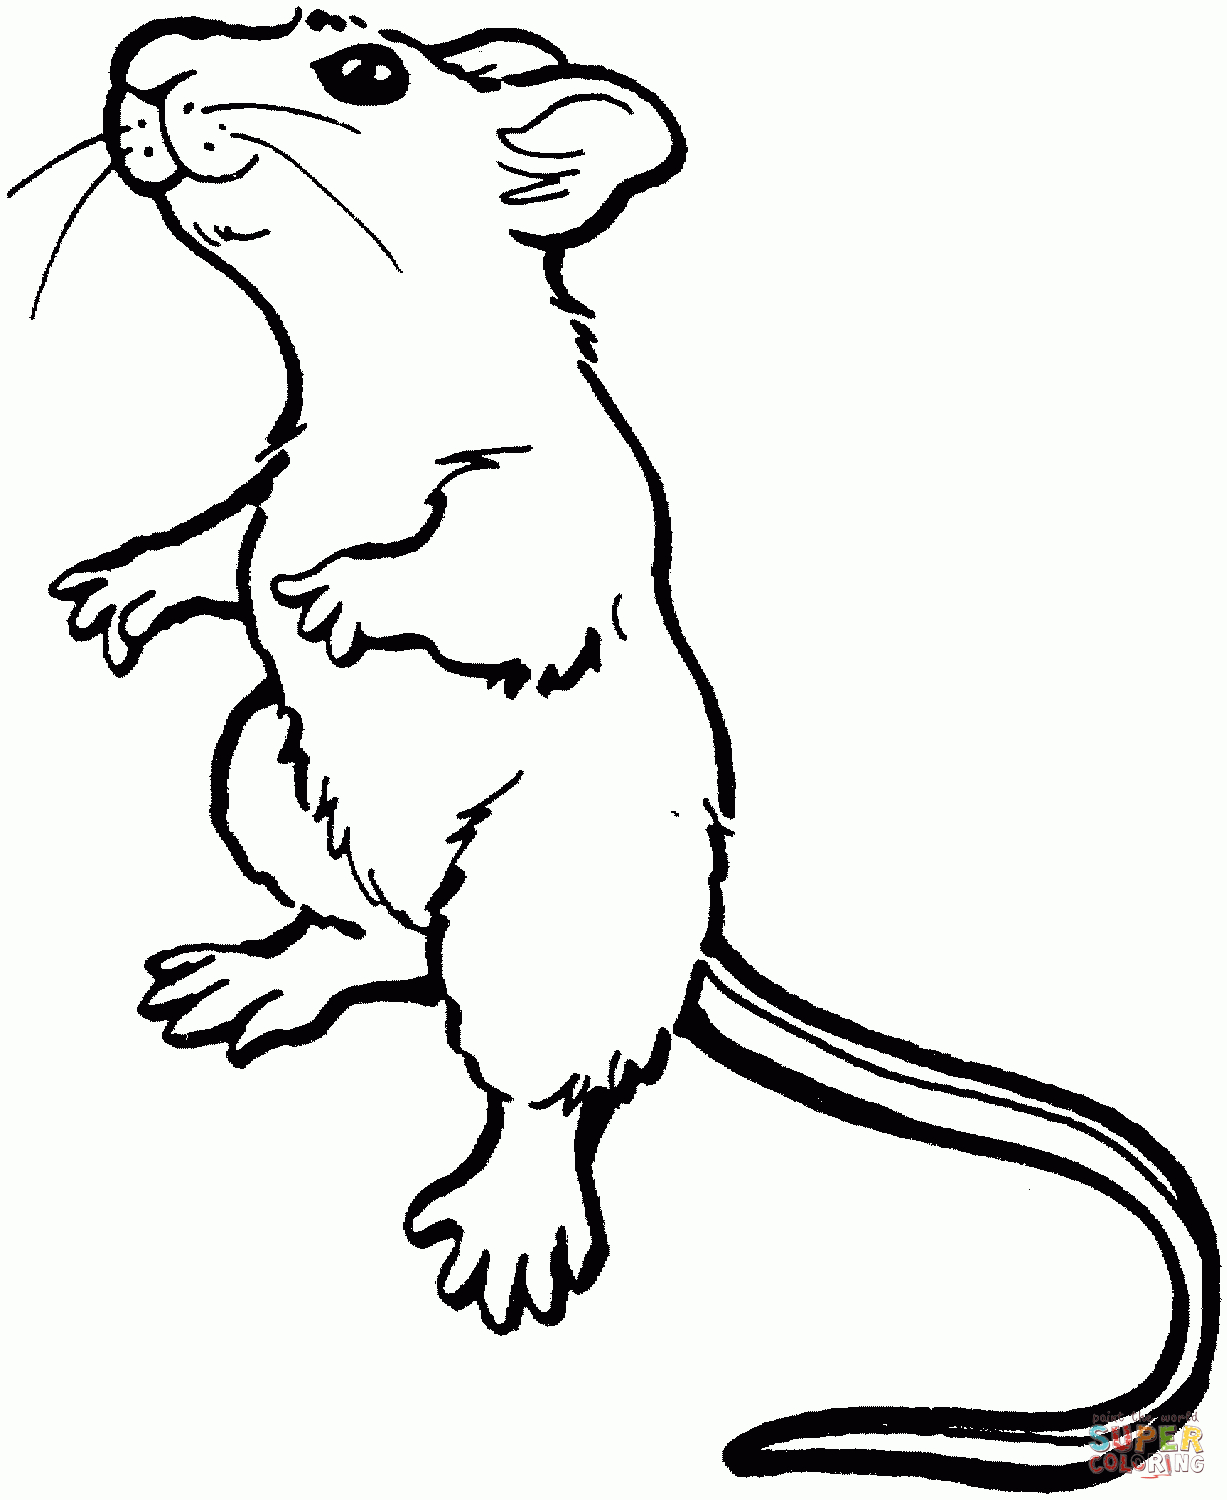 Ausmalbilder Mäuse - Malvorlagen Kostenlos Zum Ausdrucken mit Die Maus Ausmalbilder